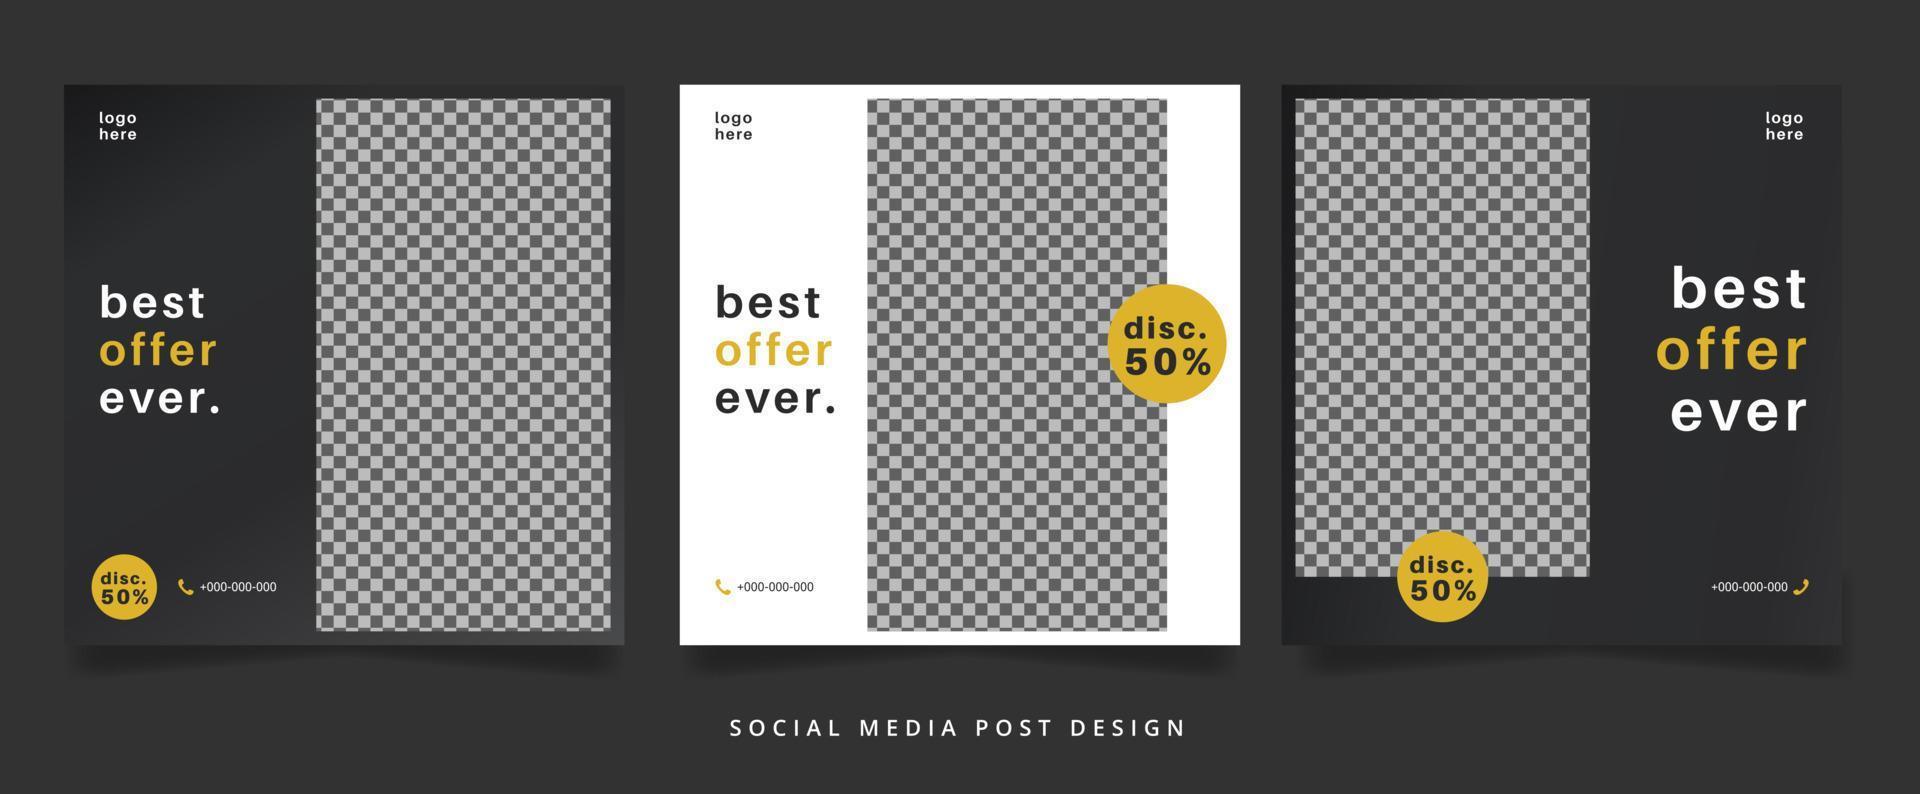 uppsättning minimalistiska svartvita modereklamblad eller banner för sociala medier vektor